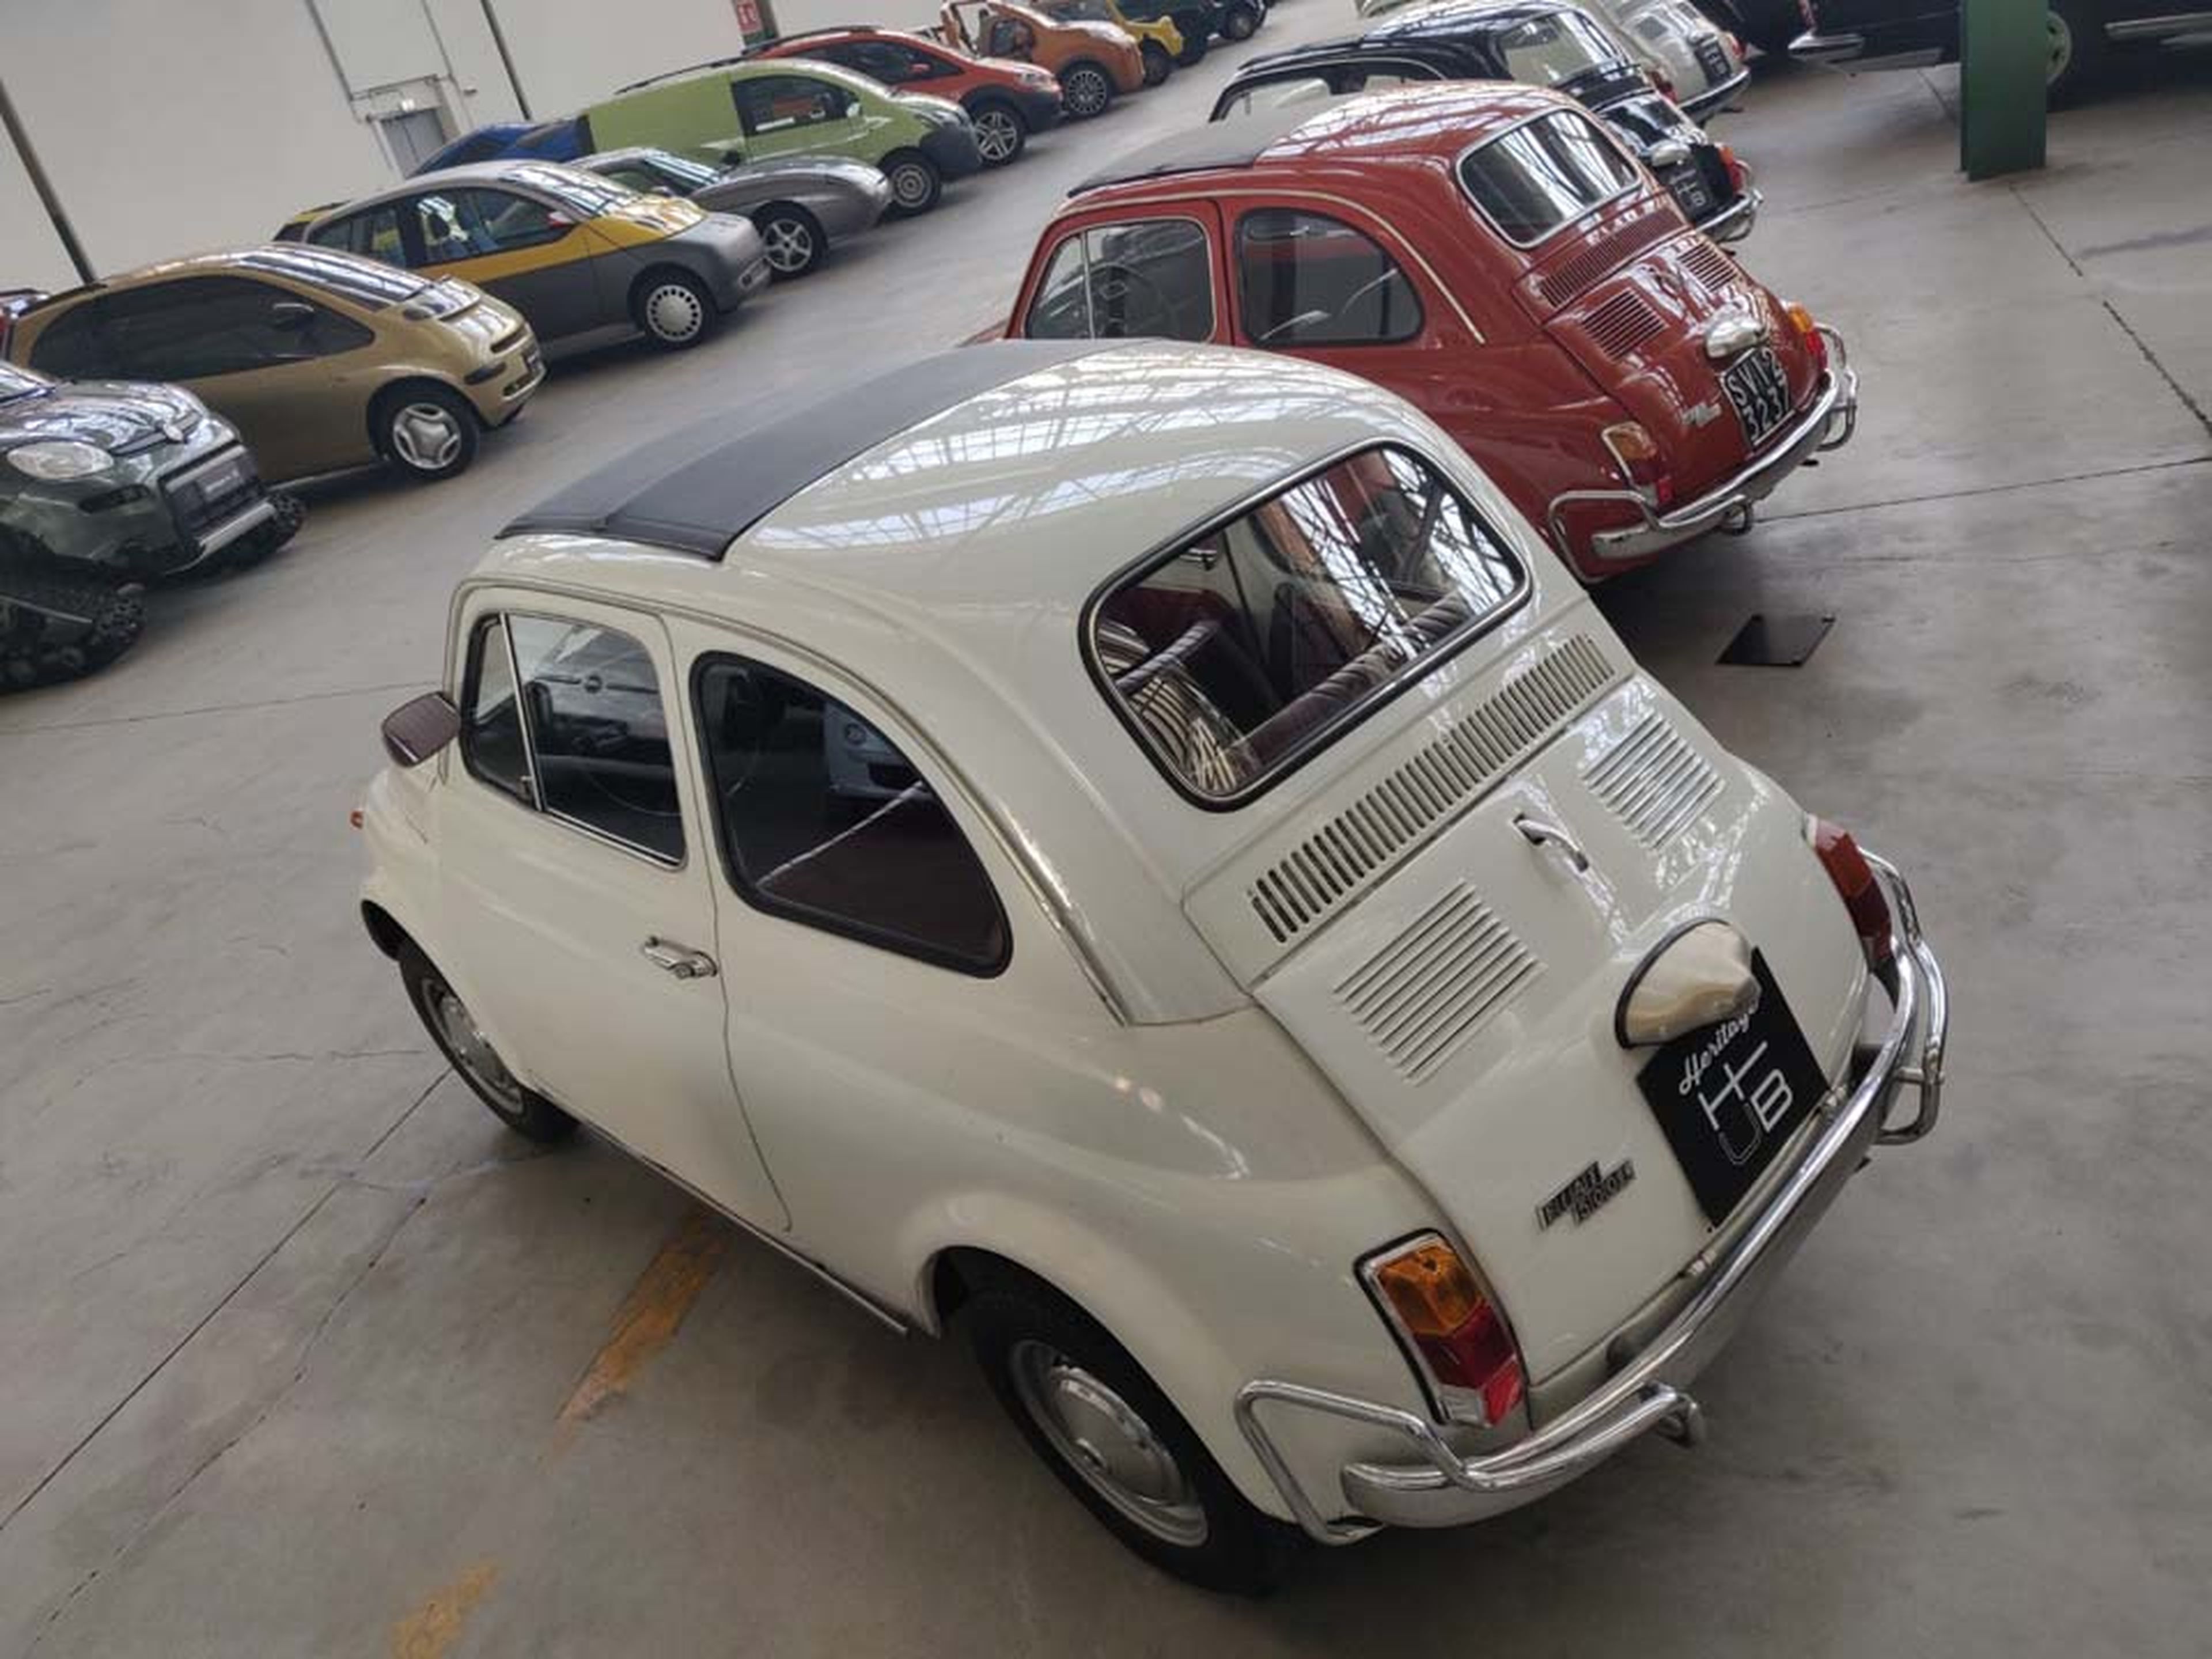 La increíble historia del Fiat 600